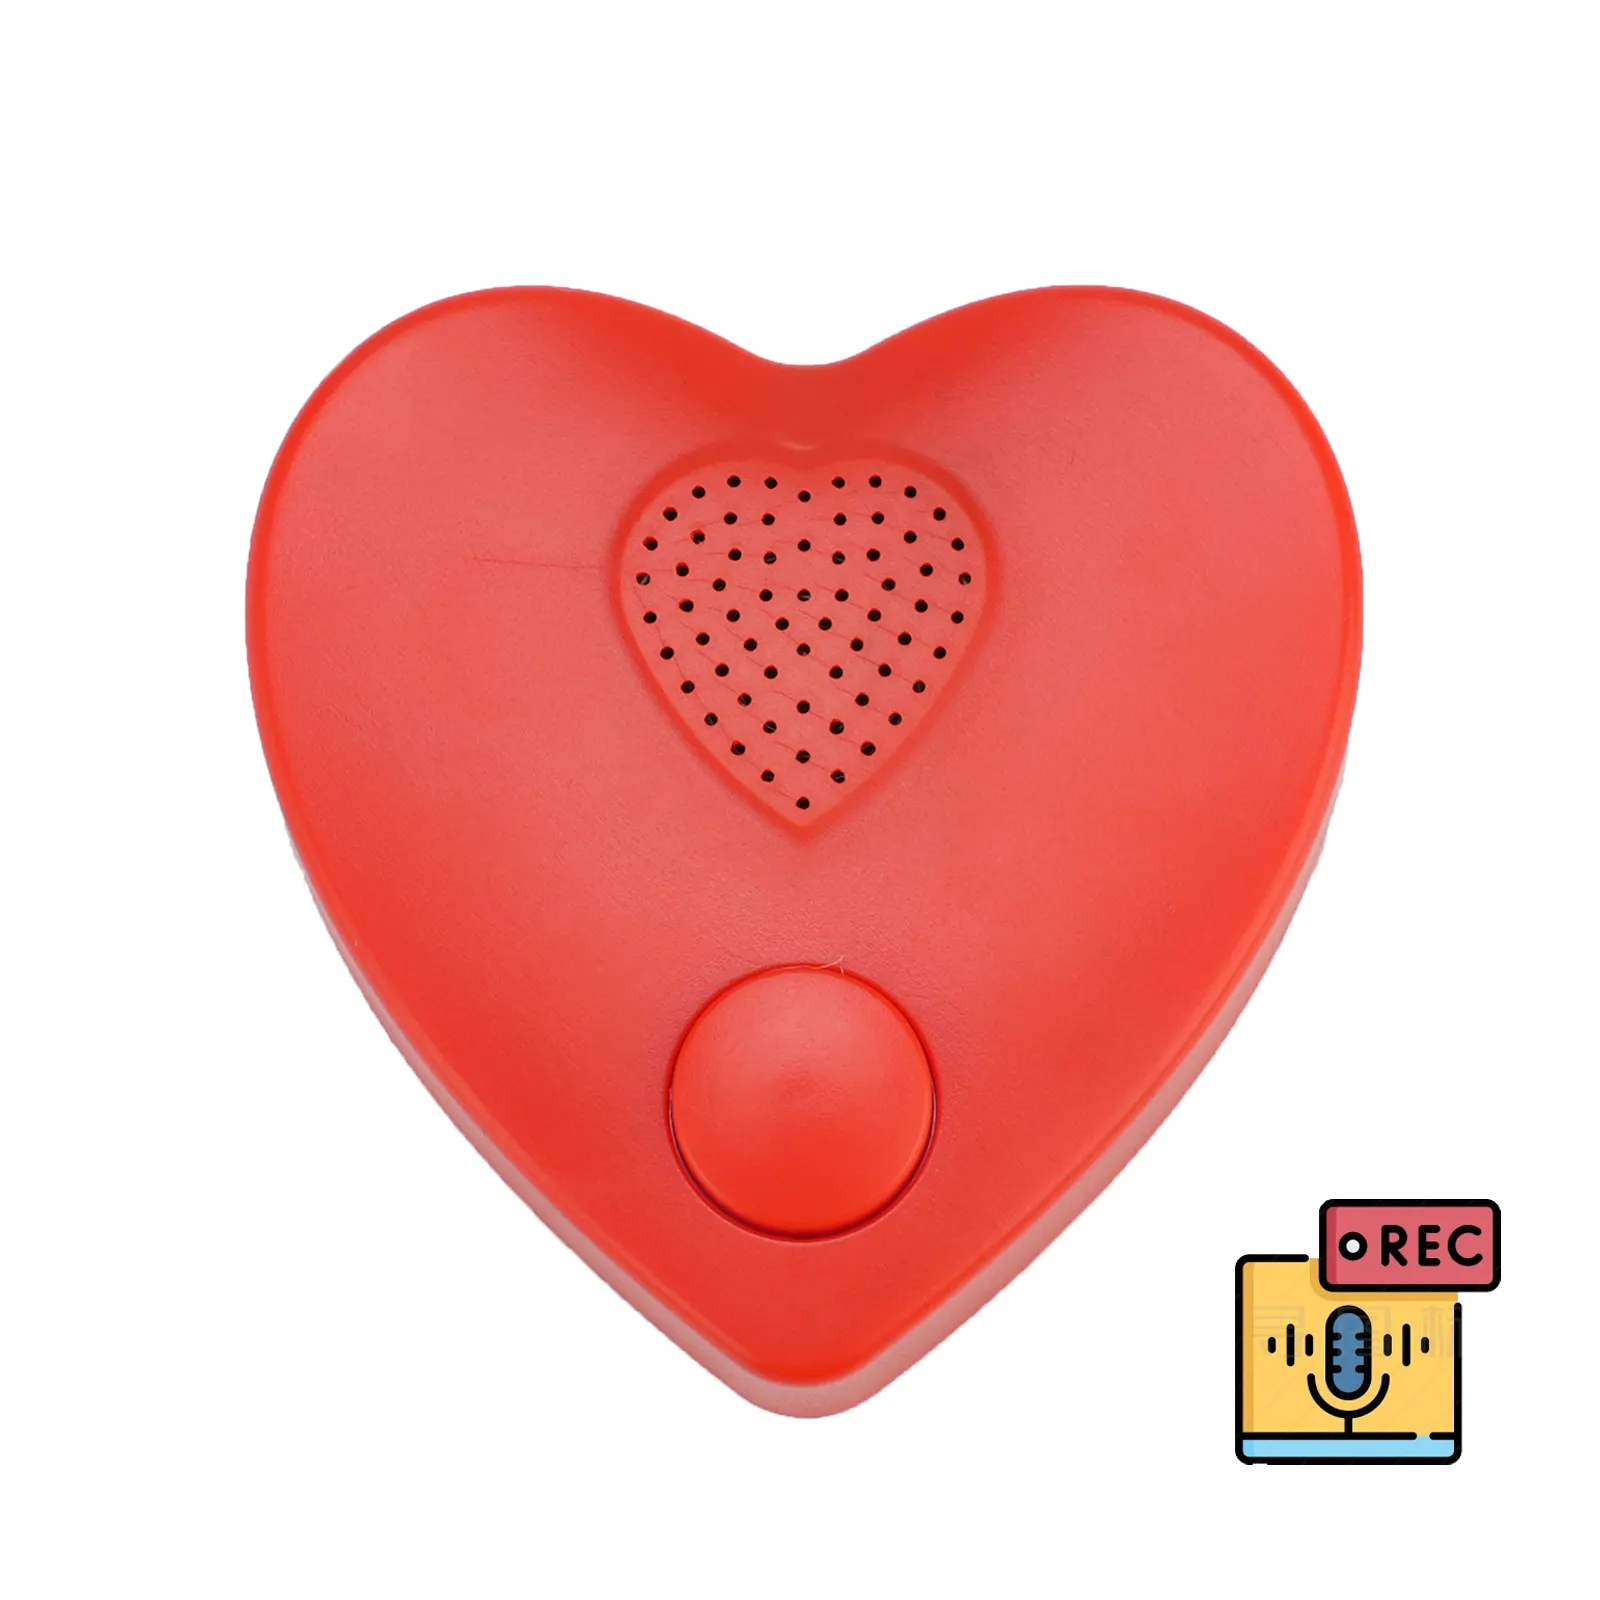 आलीशान खिलौनों, भरवां जानवरों के तकिए के लिए अनुकूलित संदेश रिकॉर्ड करने योग्य दिल के आकार का वॉयस रिकॉर्डर प्लास्टिक साउंड बॉक्स संगीत मॉड्यूल